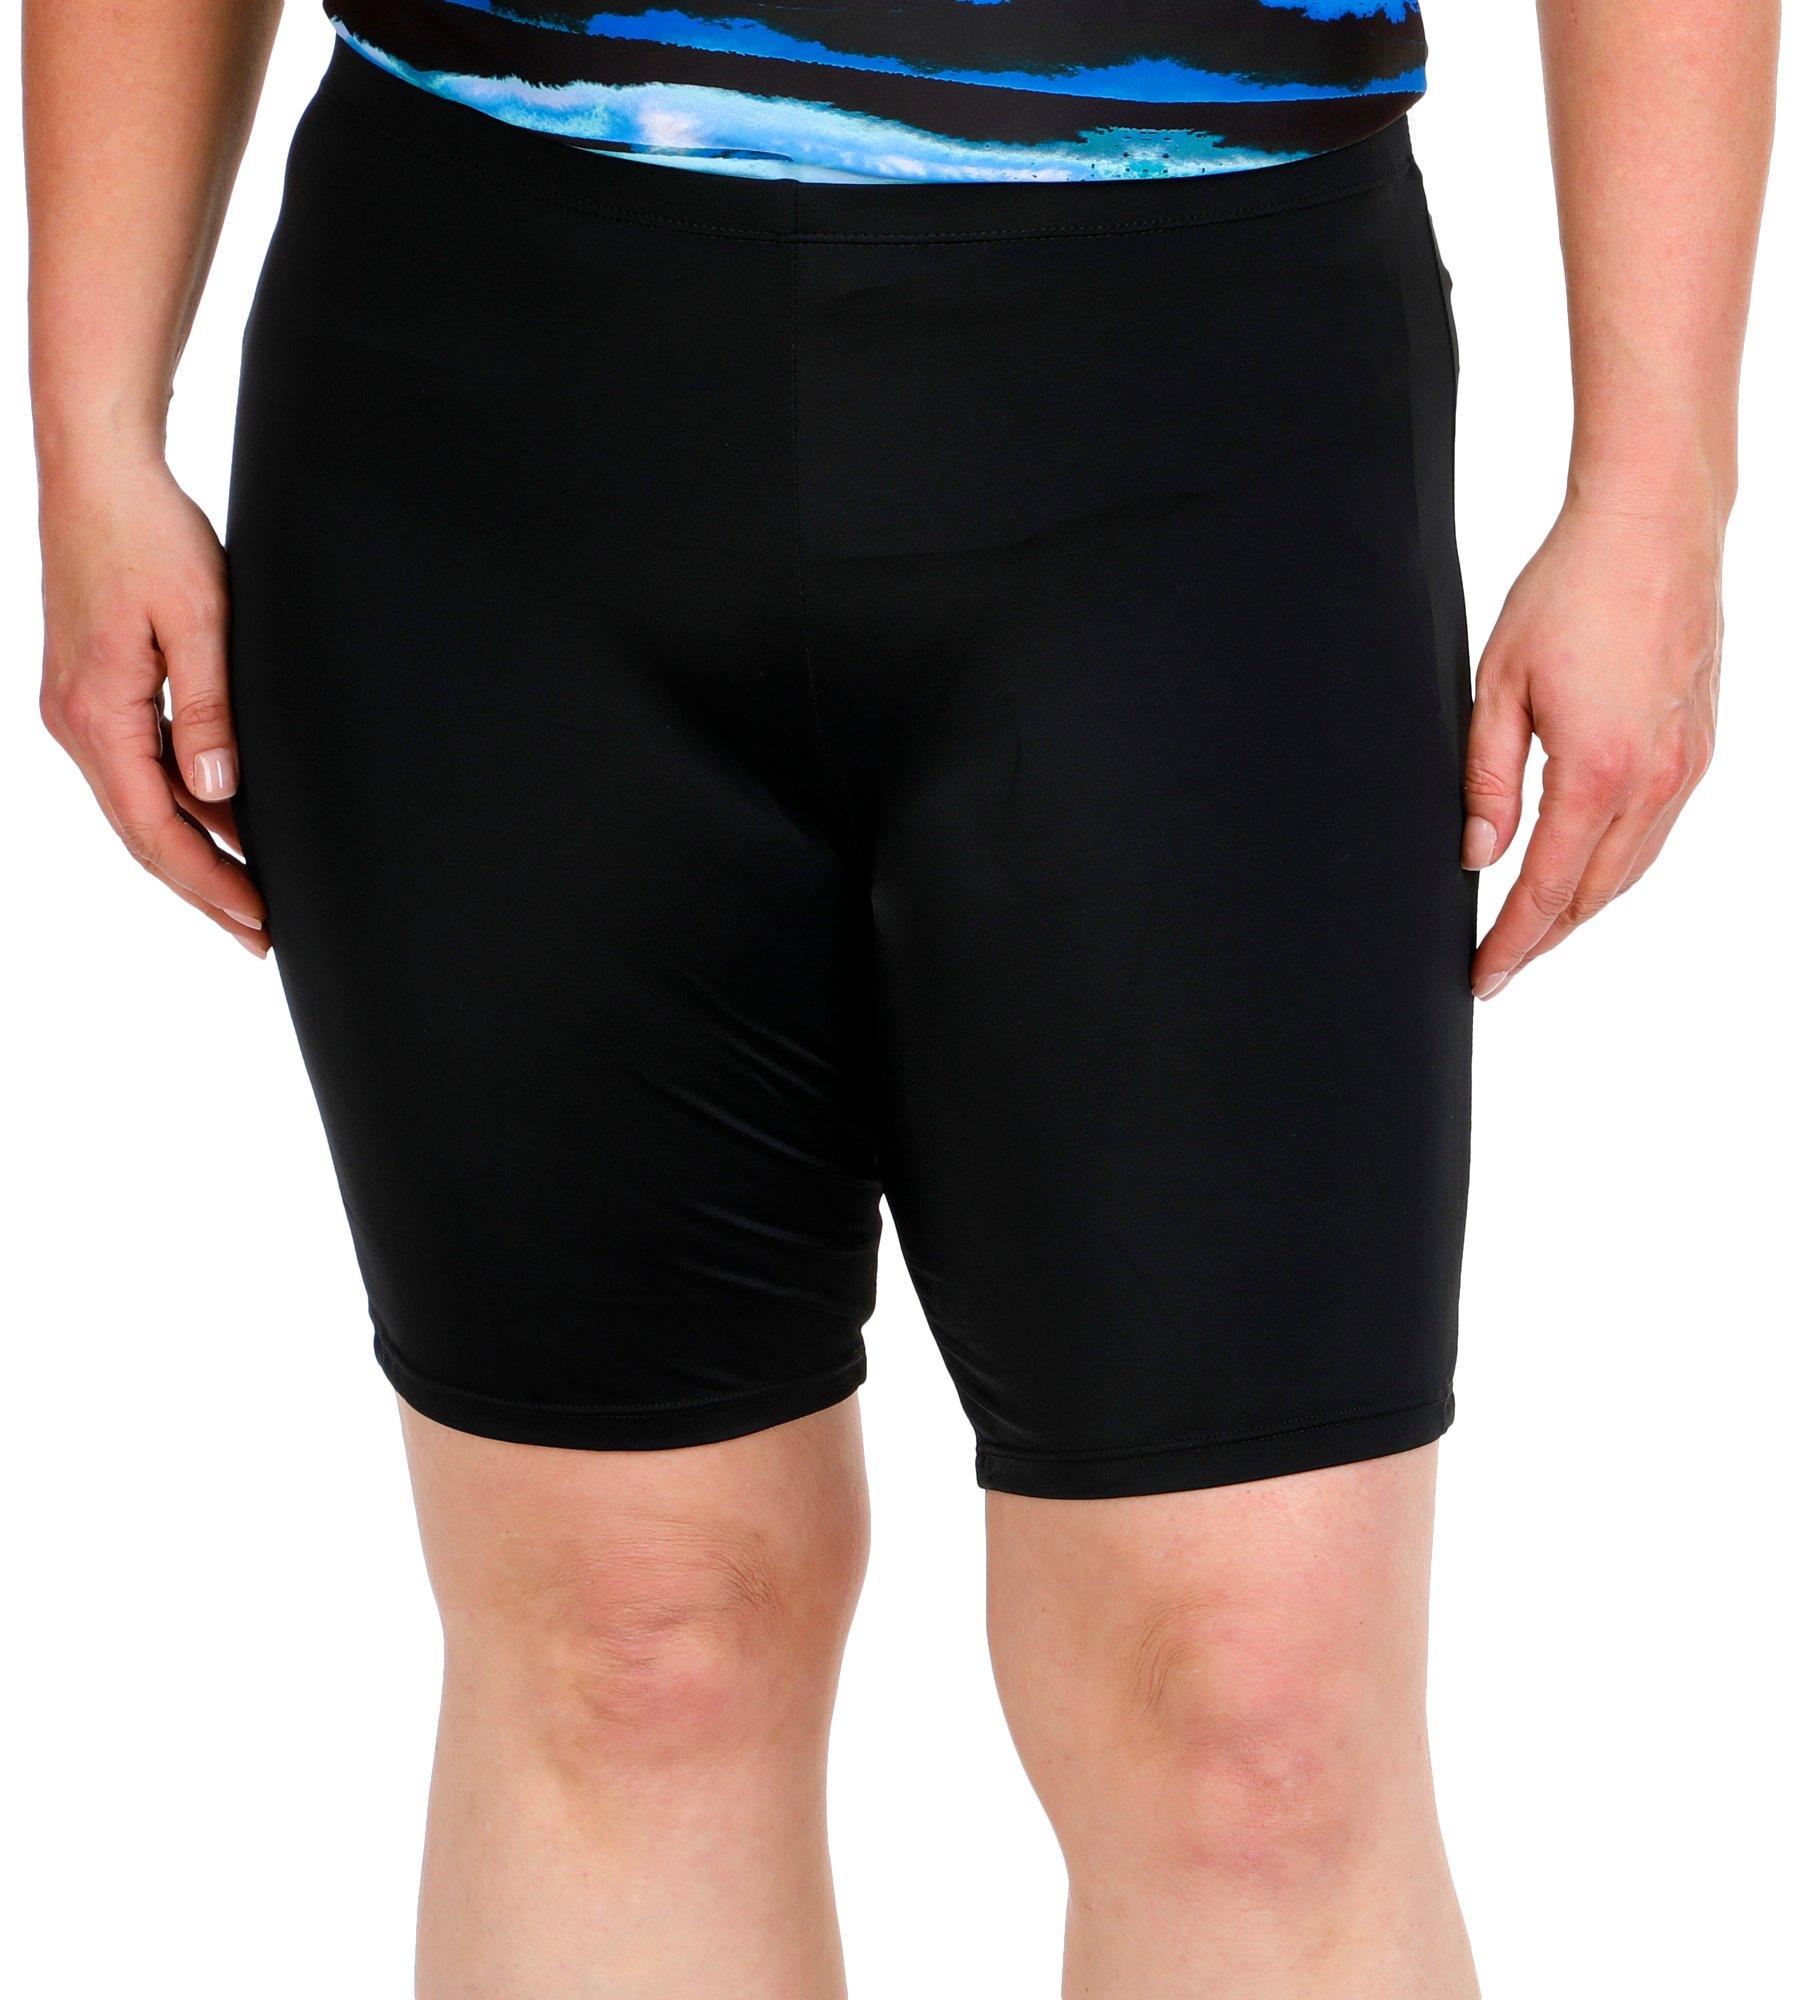 A Shore Fit Plus Solid Hip Minimizer Swim Bike Shorts